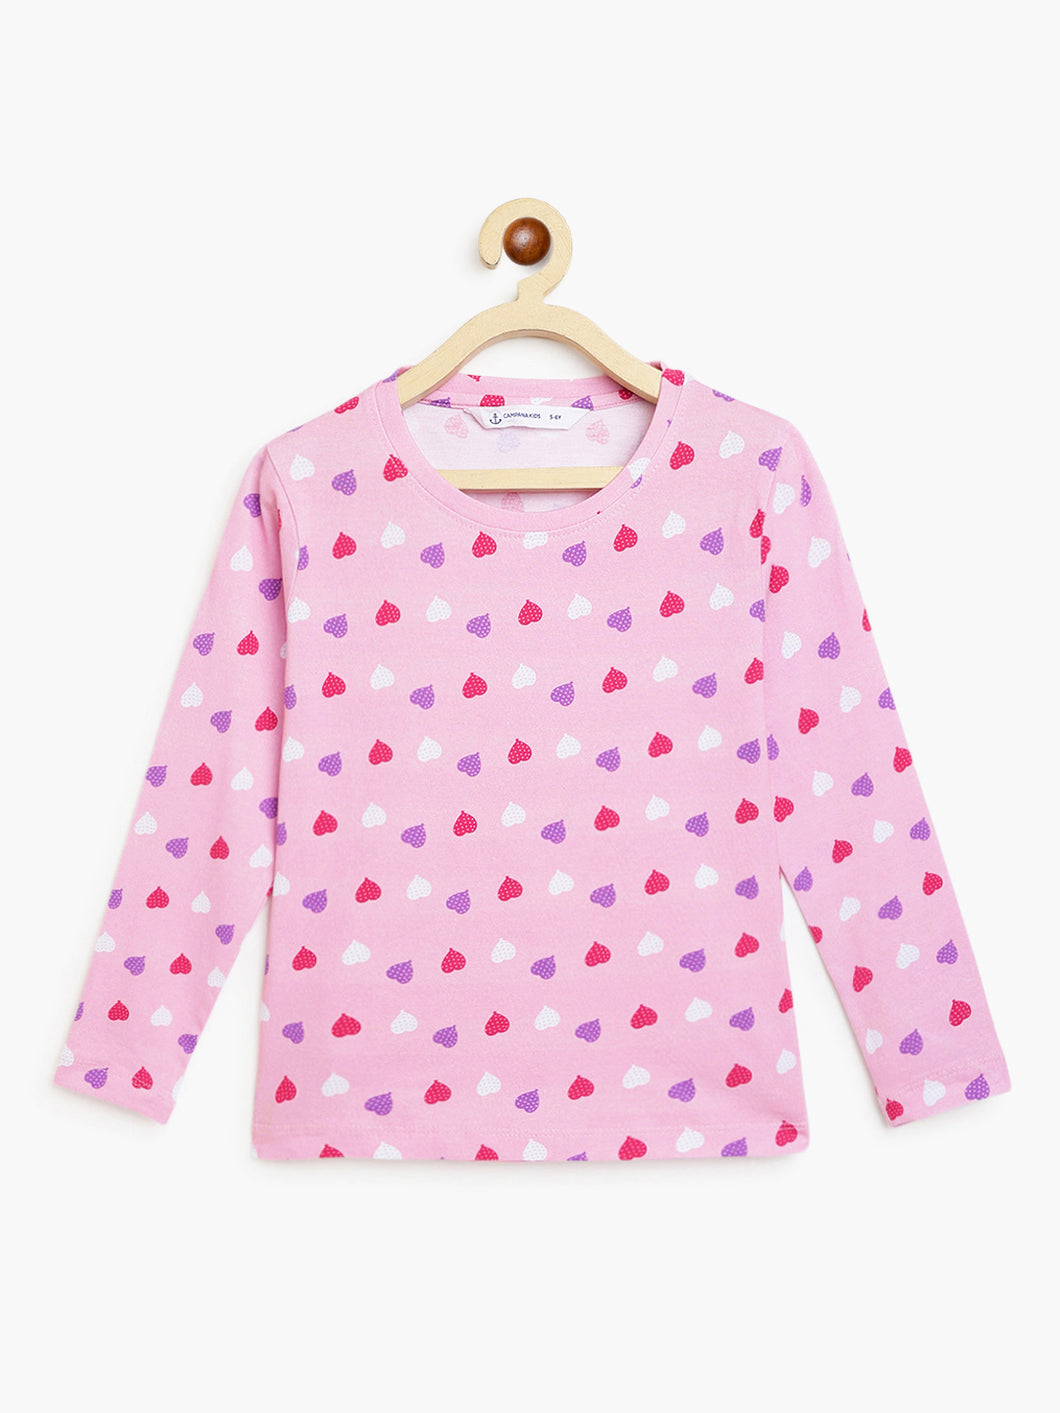 Campana Girls Lily Long Sleeves T-Shirt - Balloon Hearts Print - Soft Pink